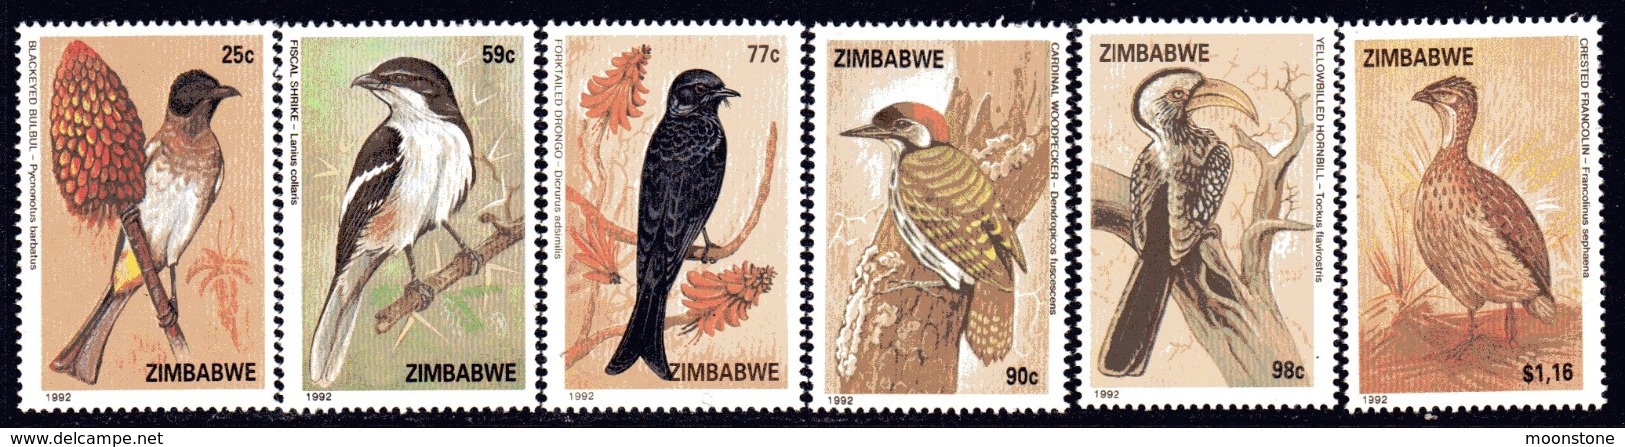 Zimbabwe 1992 Birds Set Of 6, SG 826/31, MNH (BA2) - Zimbabwe (1980-...)